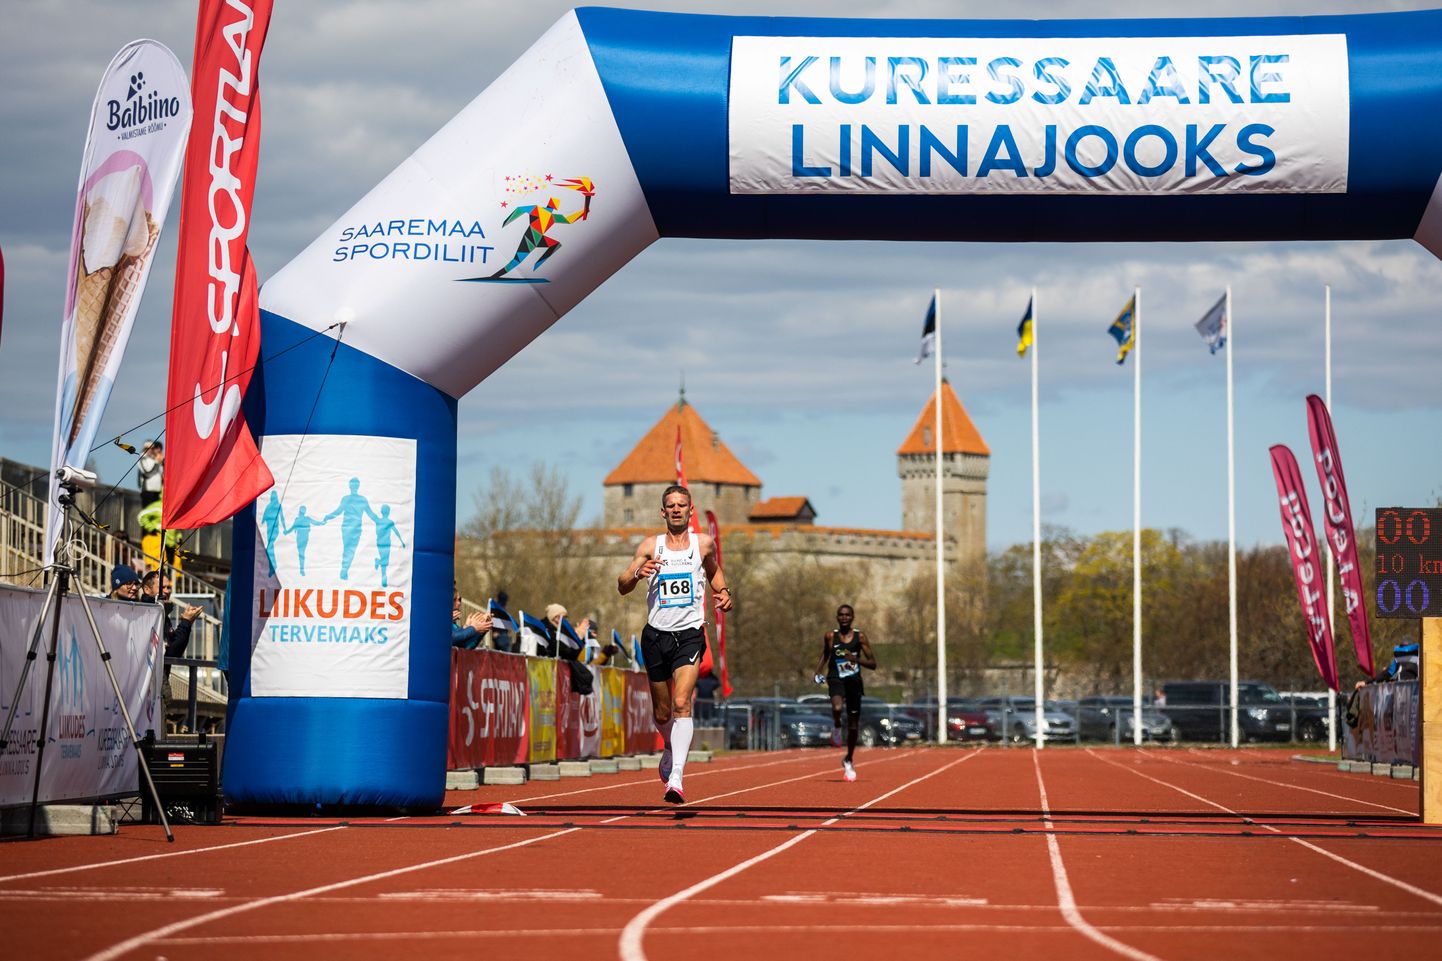 Eelmisel aastal sai Kuressaare linnajooks tähelepanu sellega, et 10 kilomeetri distantsi võitja Tiidrel Nurme püstitas algselt Eesti rekordi, mis hiljem sertifikaadi puudumise tõttu siiski tühistati. Vaatamata sellel oli eelmise aasta jooks siiski väga kõrgetasemeline, sest kohal oli tollane Eesti 10 kilomeetri edetabeli esikolmik.